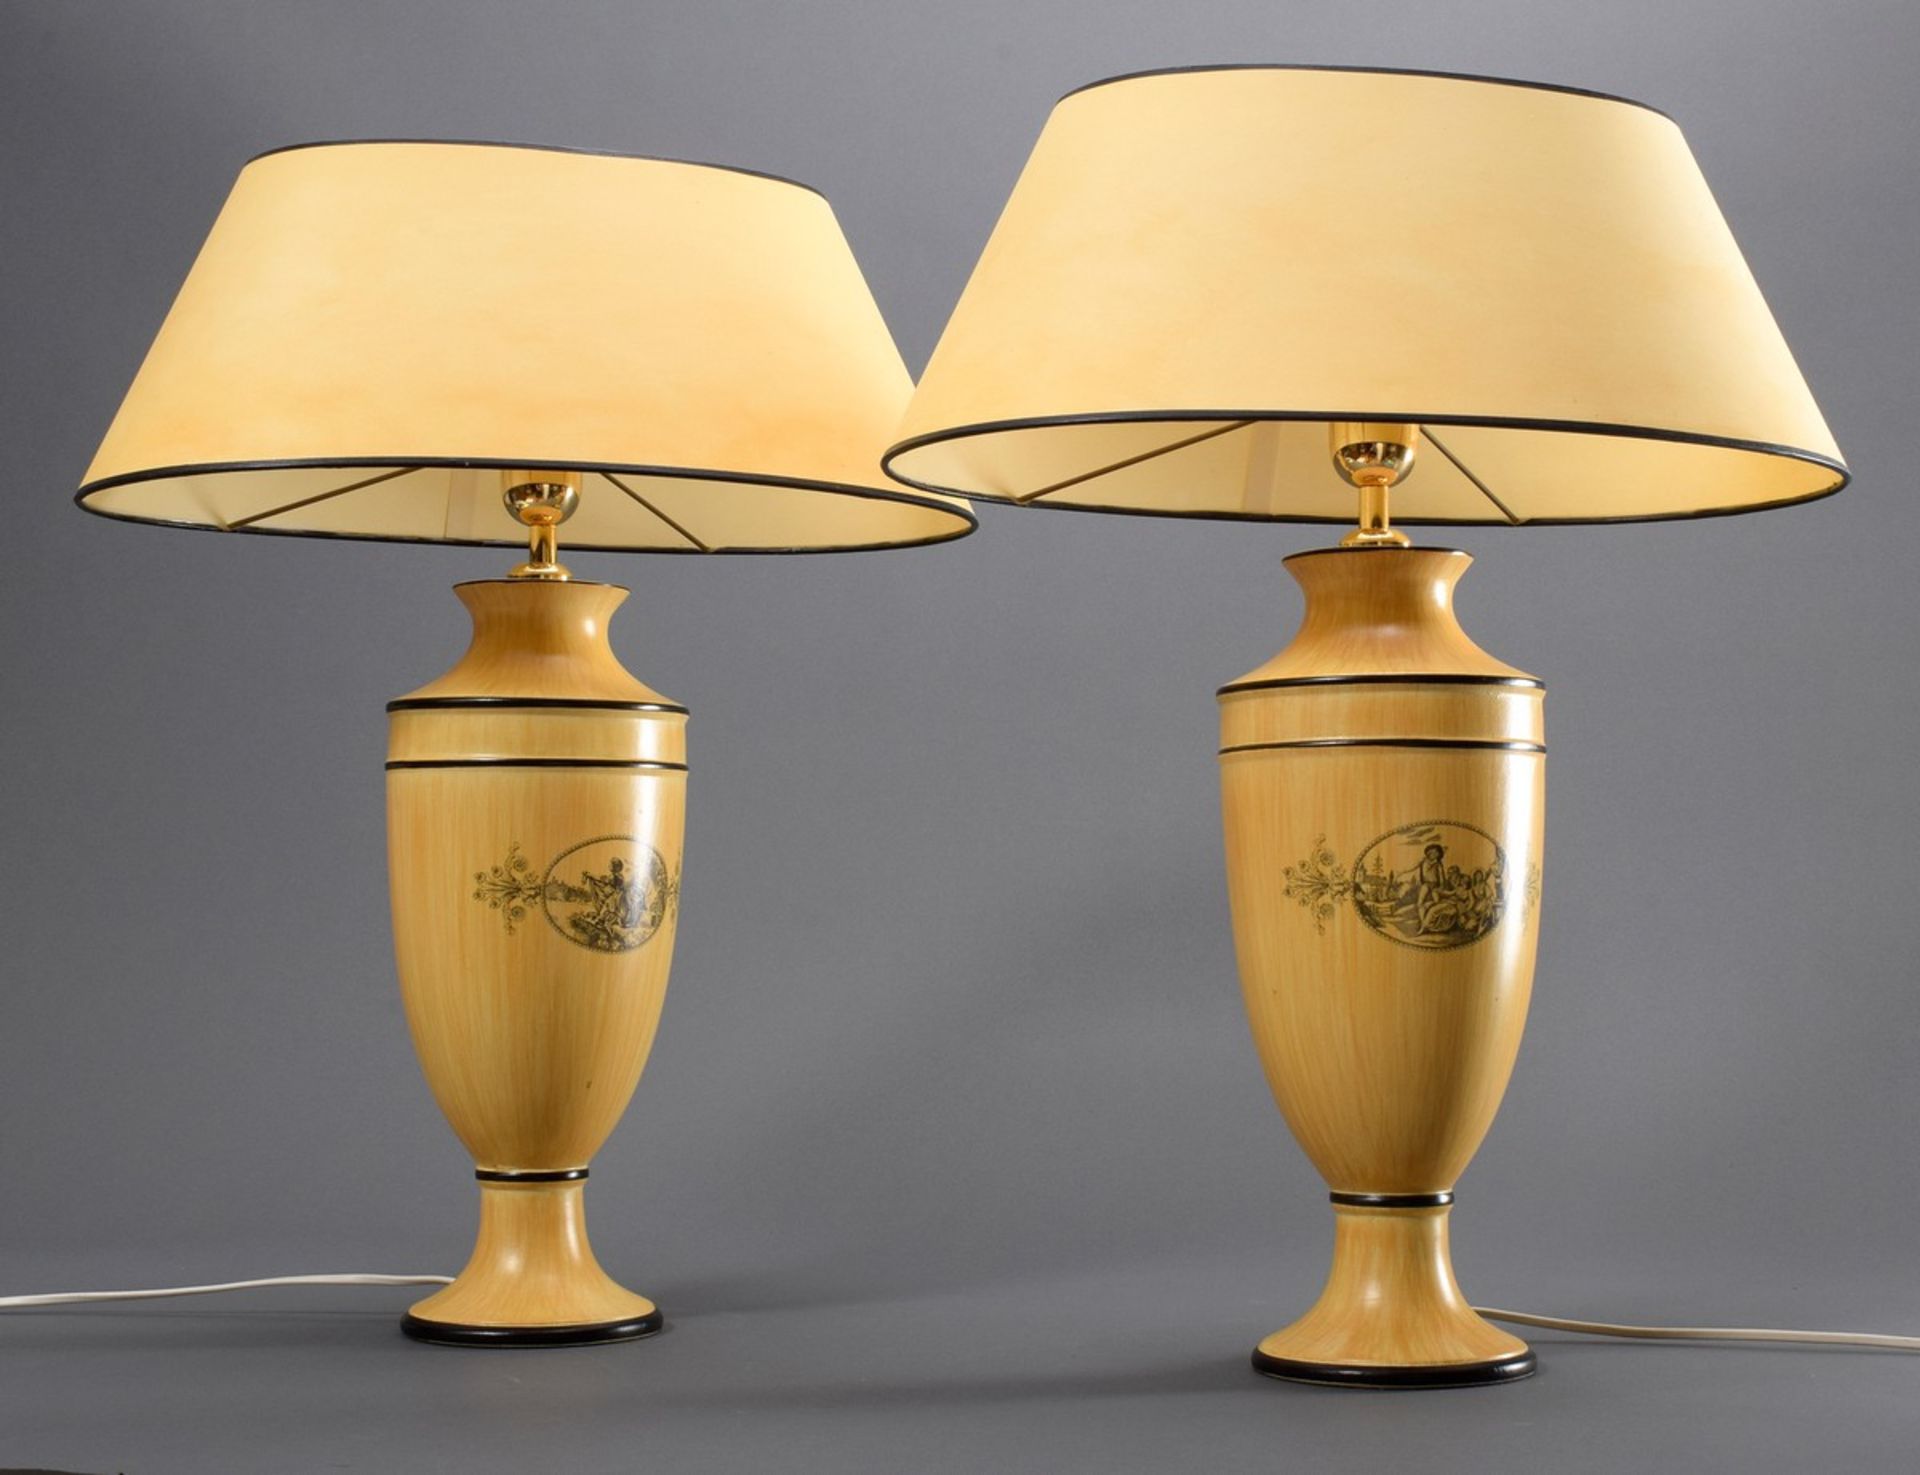 Paar Tischlampen in Holz Trompe l'oeil  in Vasenform mit schwarzem Druckdekor "Genreszene" nach Vor